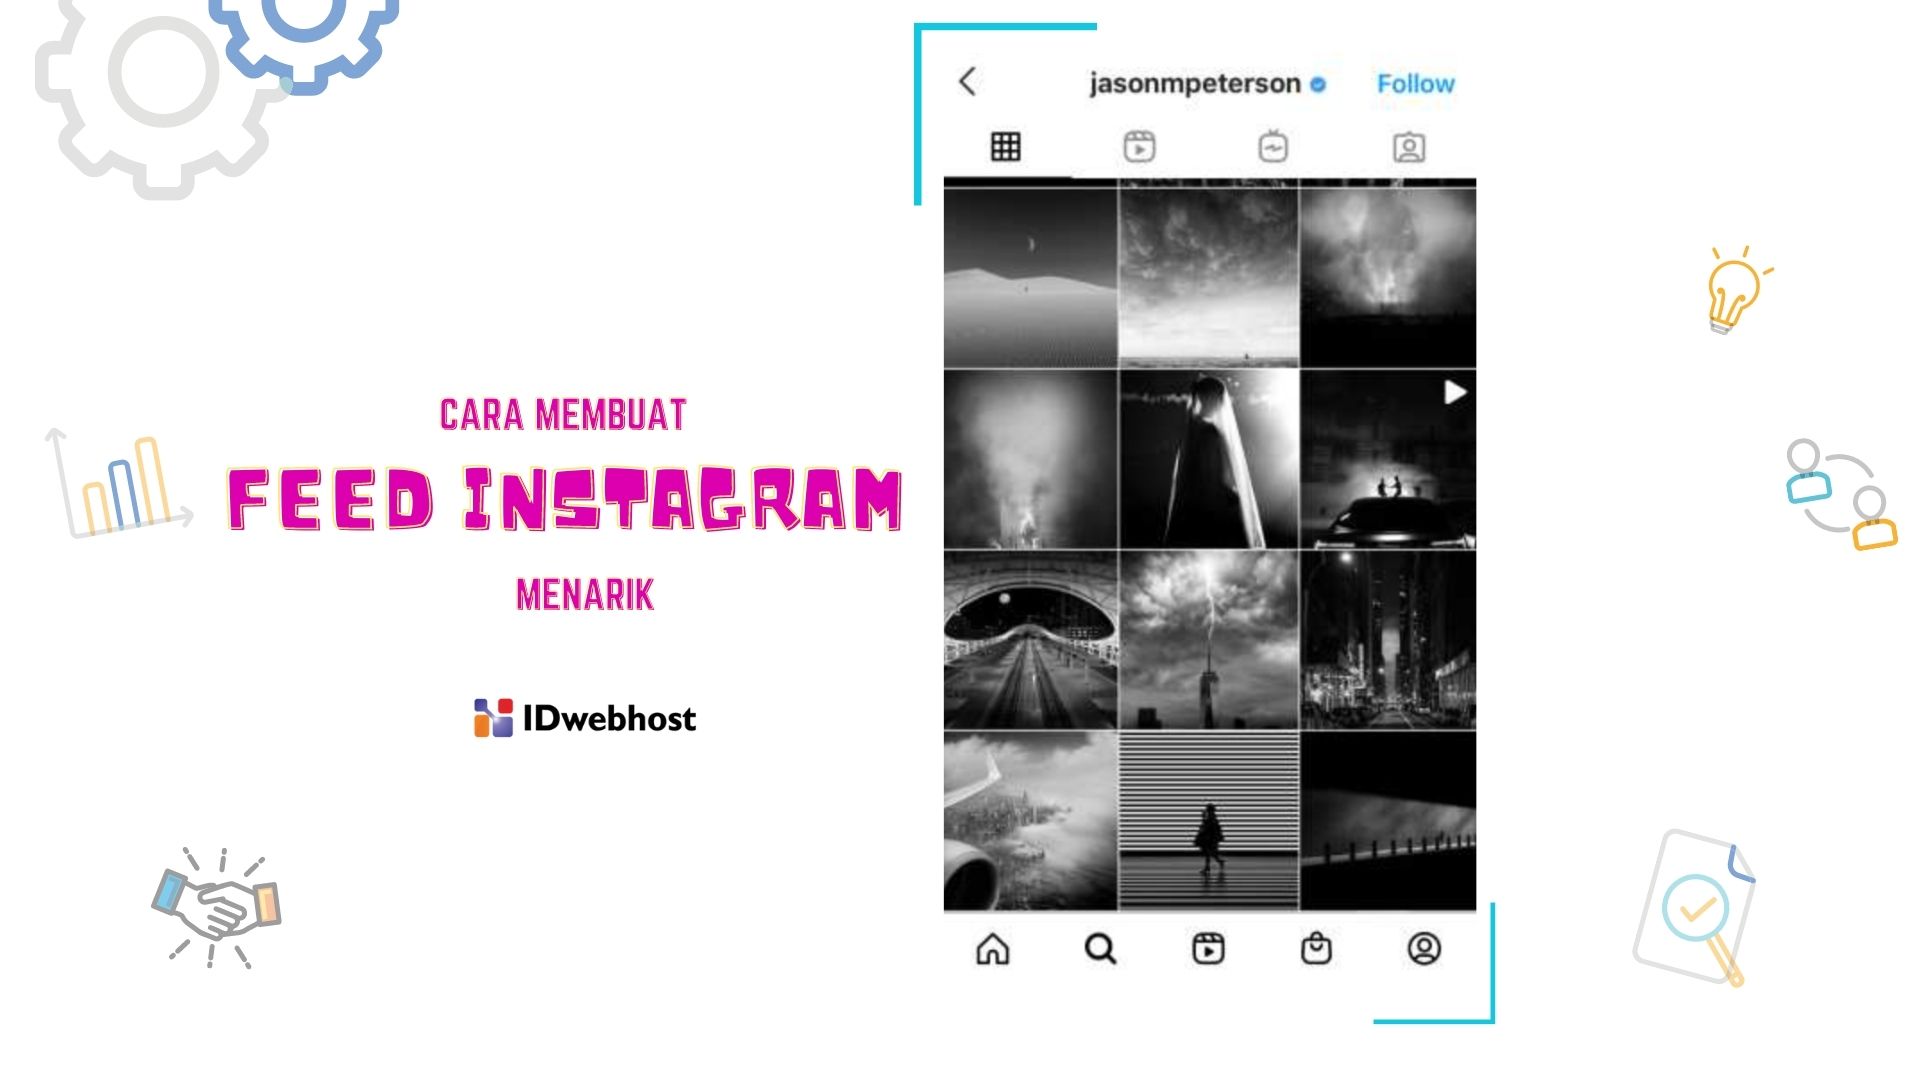 Cara-membuat-feed-instagram